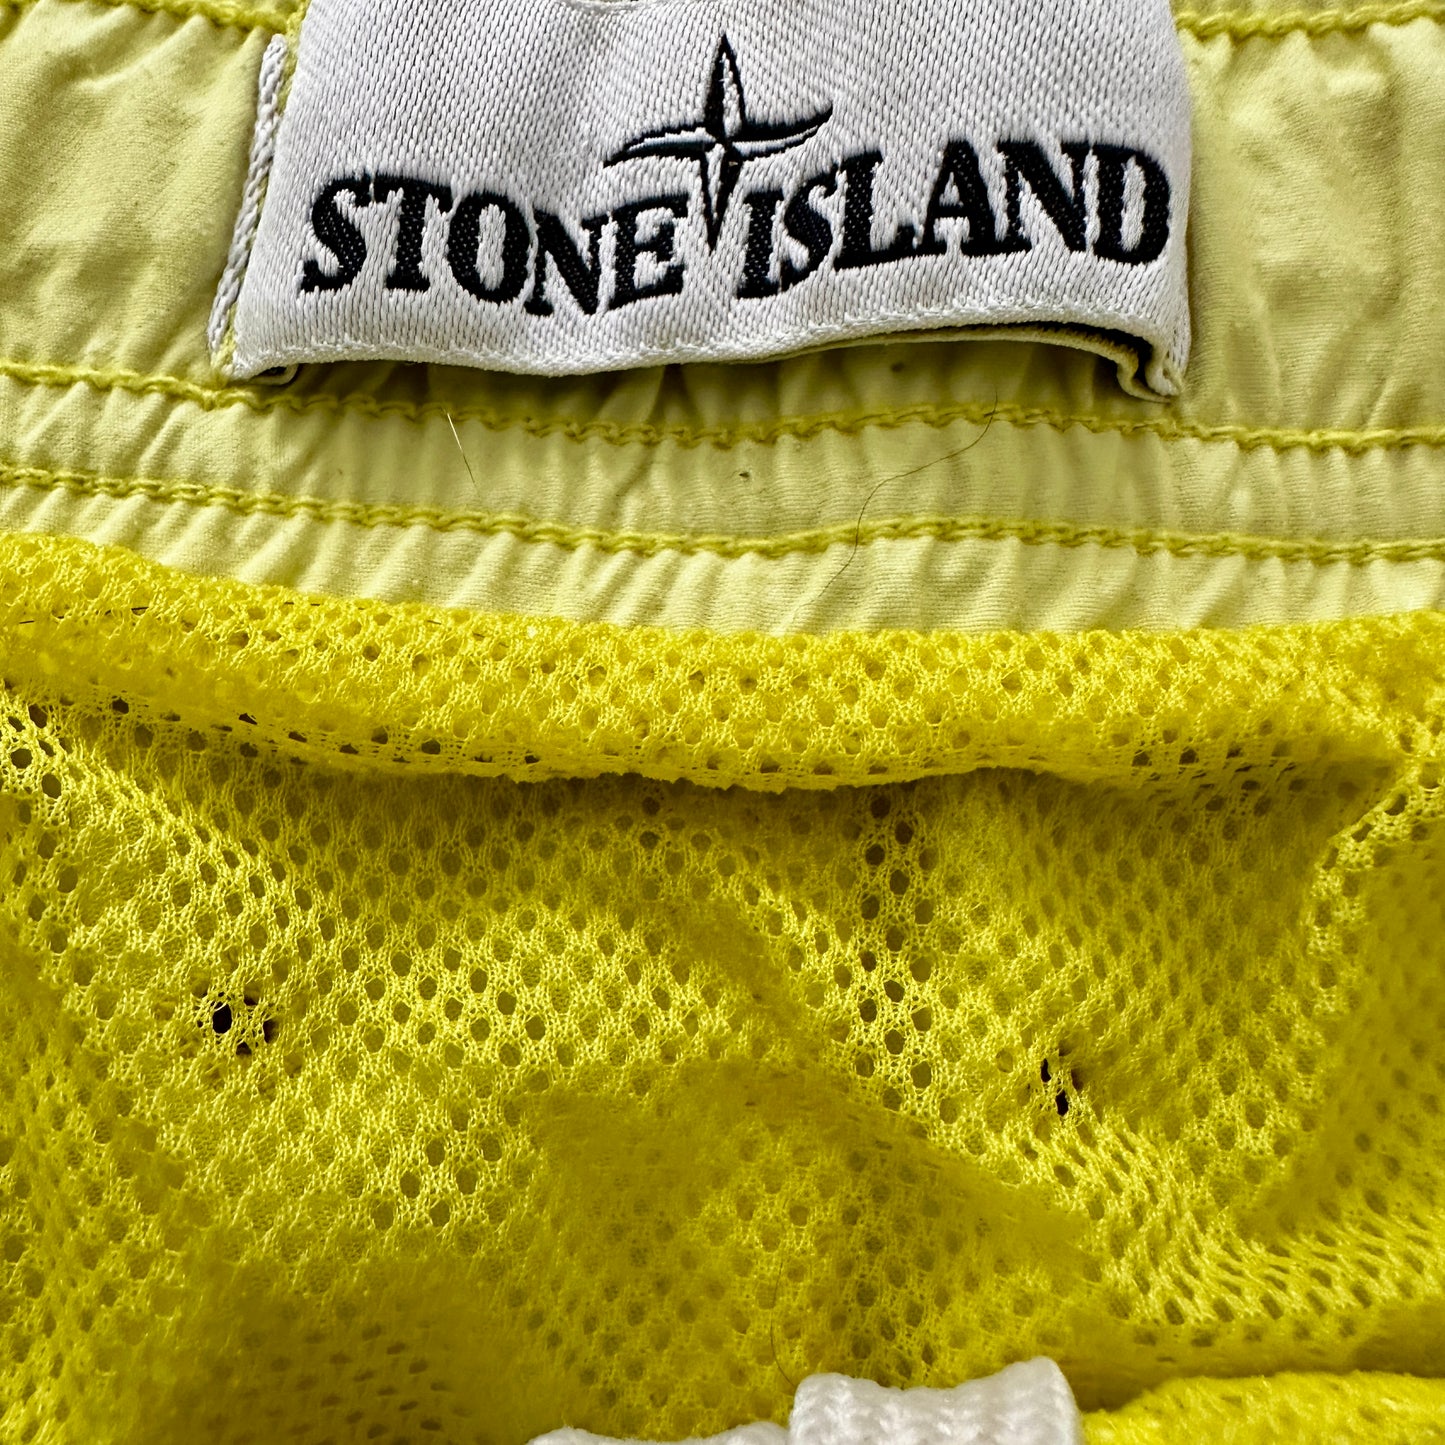 Stone Island 2019 Box Logo Swim Shorts - Lemon - M